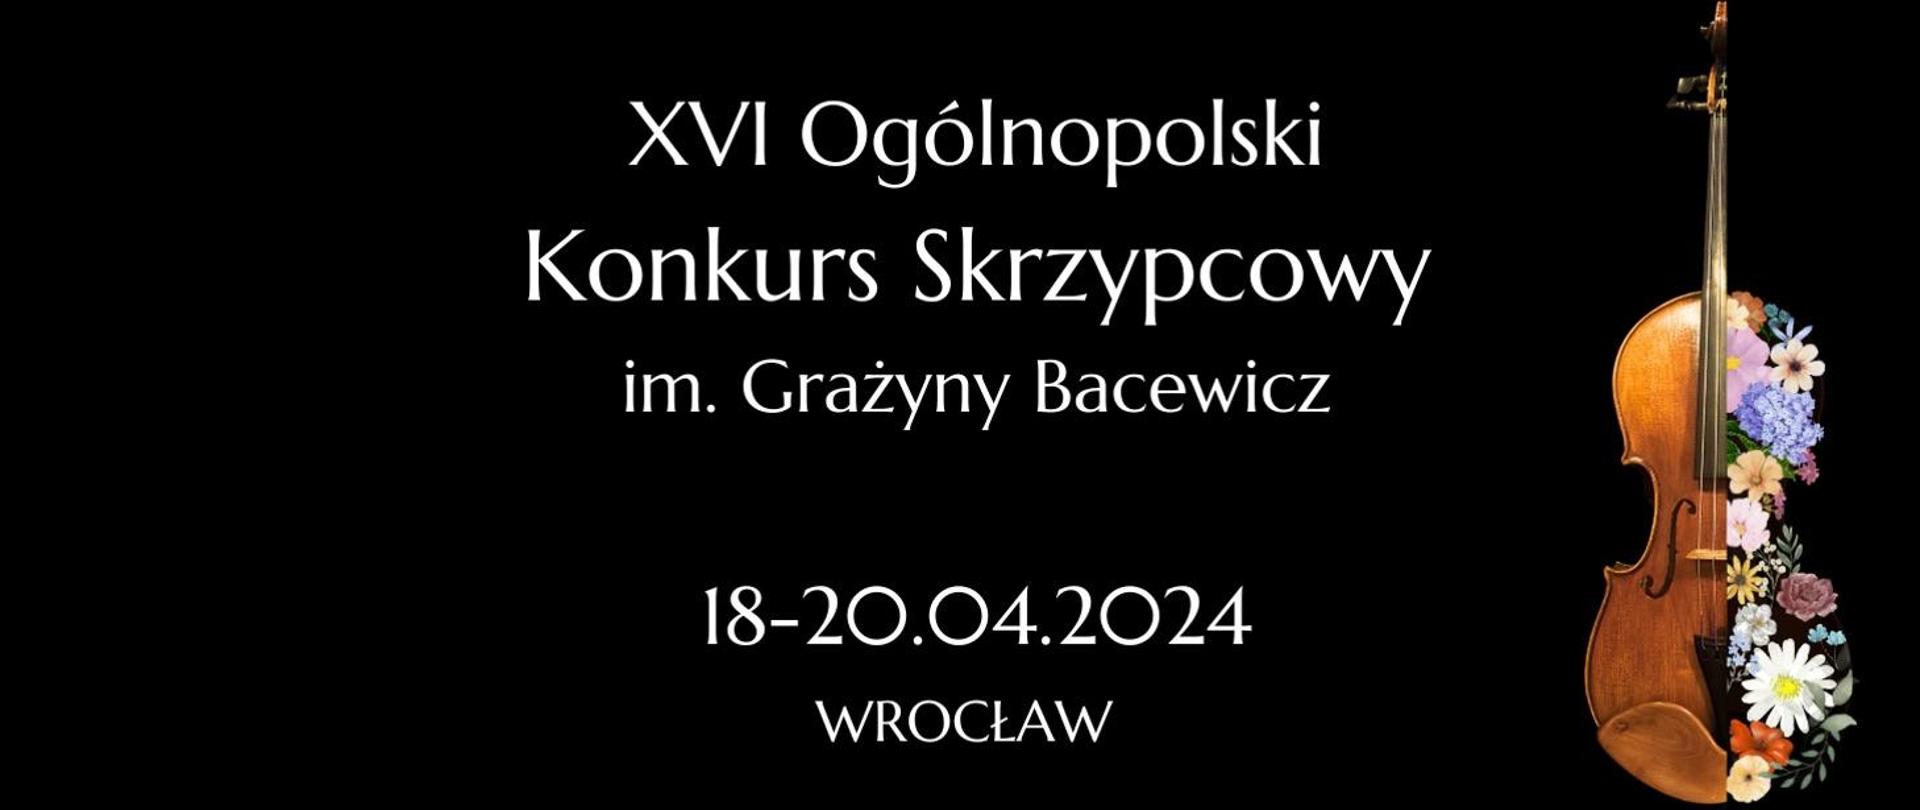 Na czarnym tle, białą czcionką XVI Ogólnopolski Konkurs Skrzypcowy im. Grażyny Bacewicz 18-20.04.2024 Wrocław. Po prawej stronie grafika skrzypiec wraz z kwiatami.